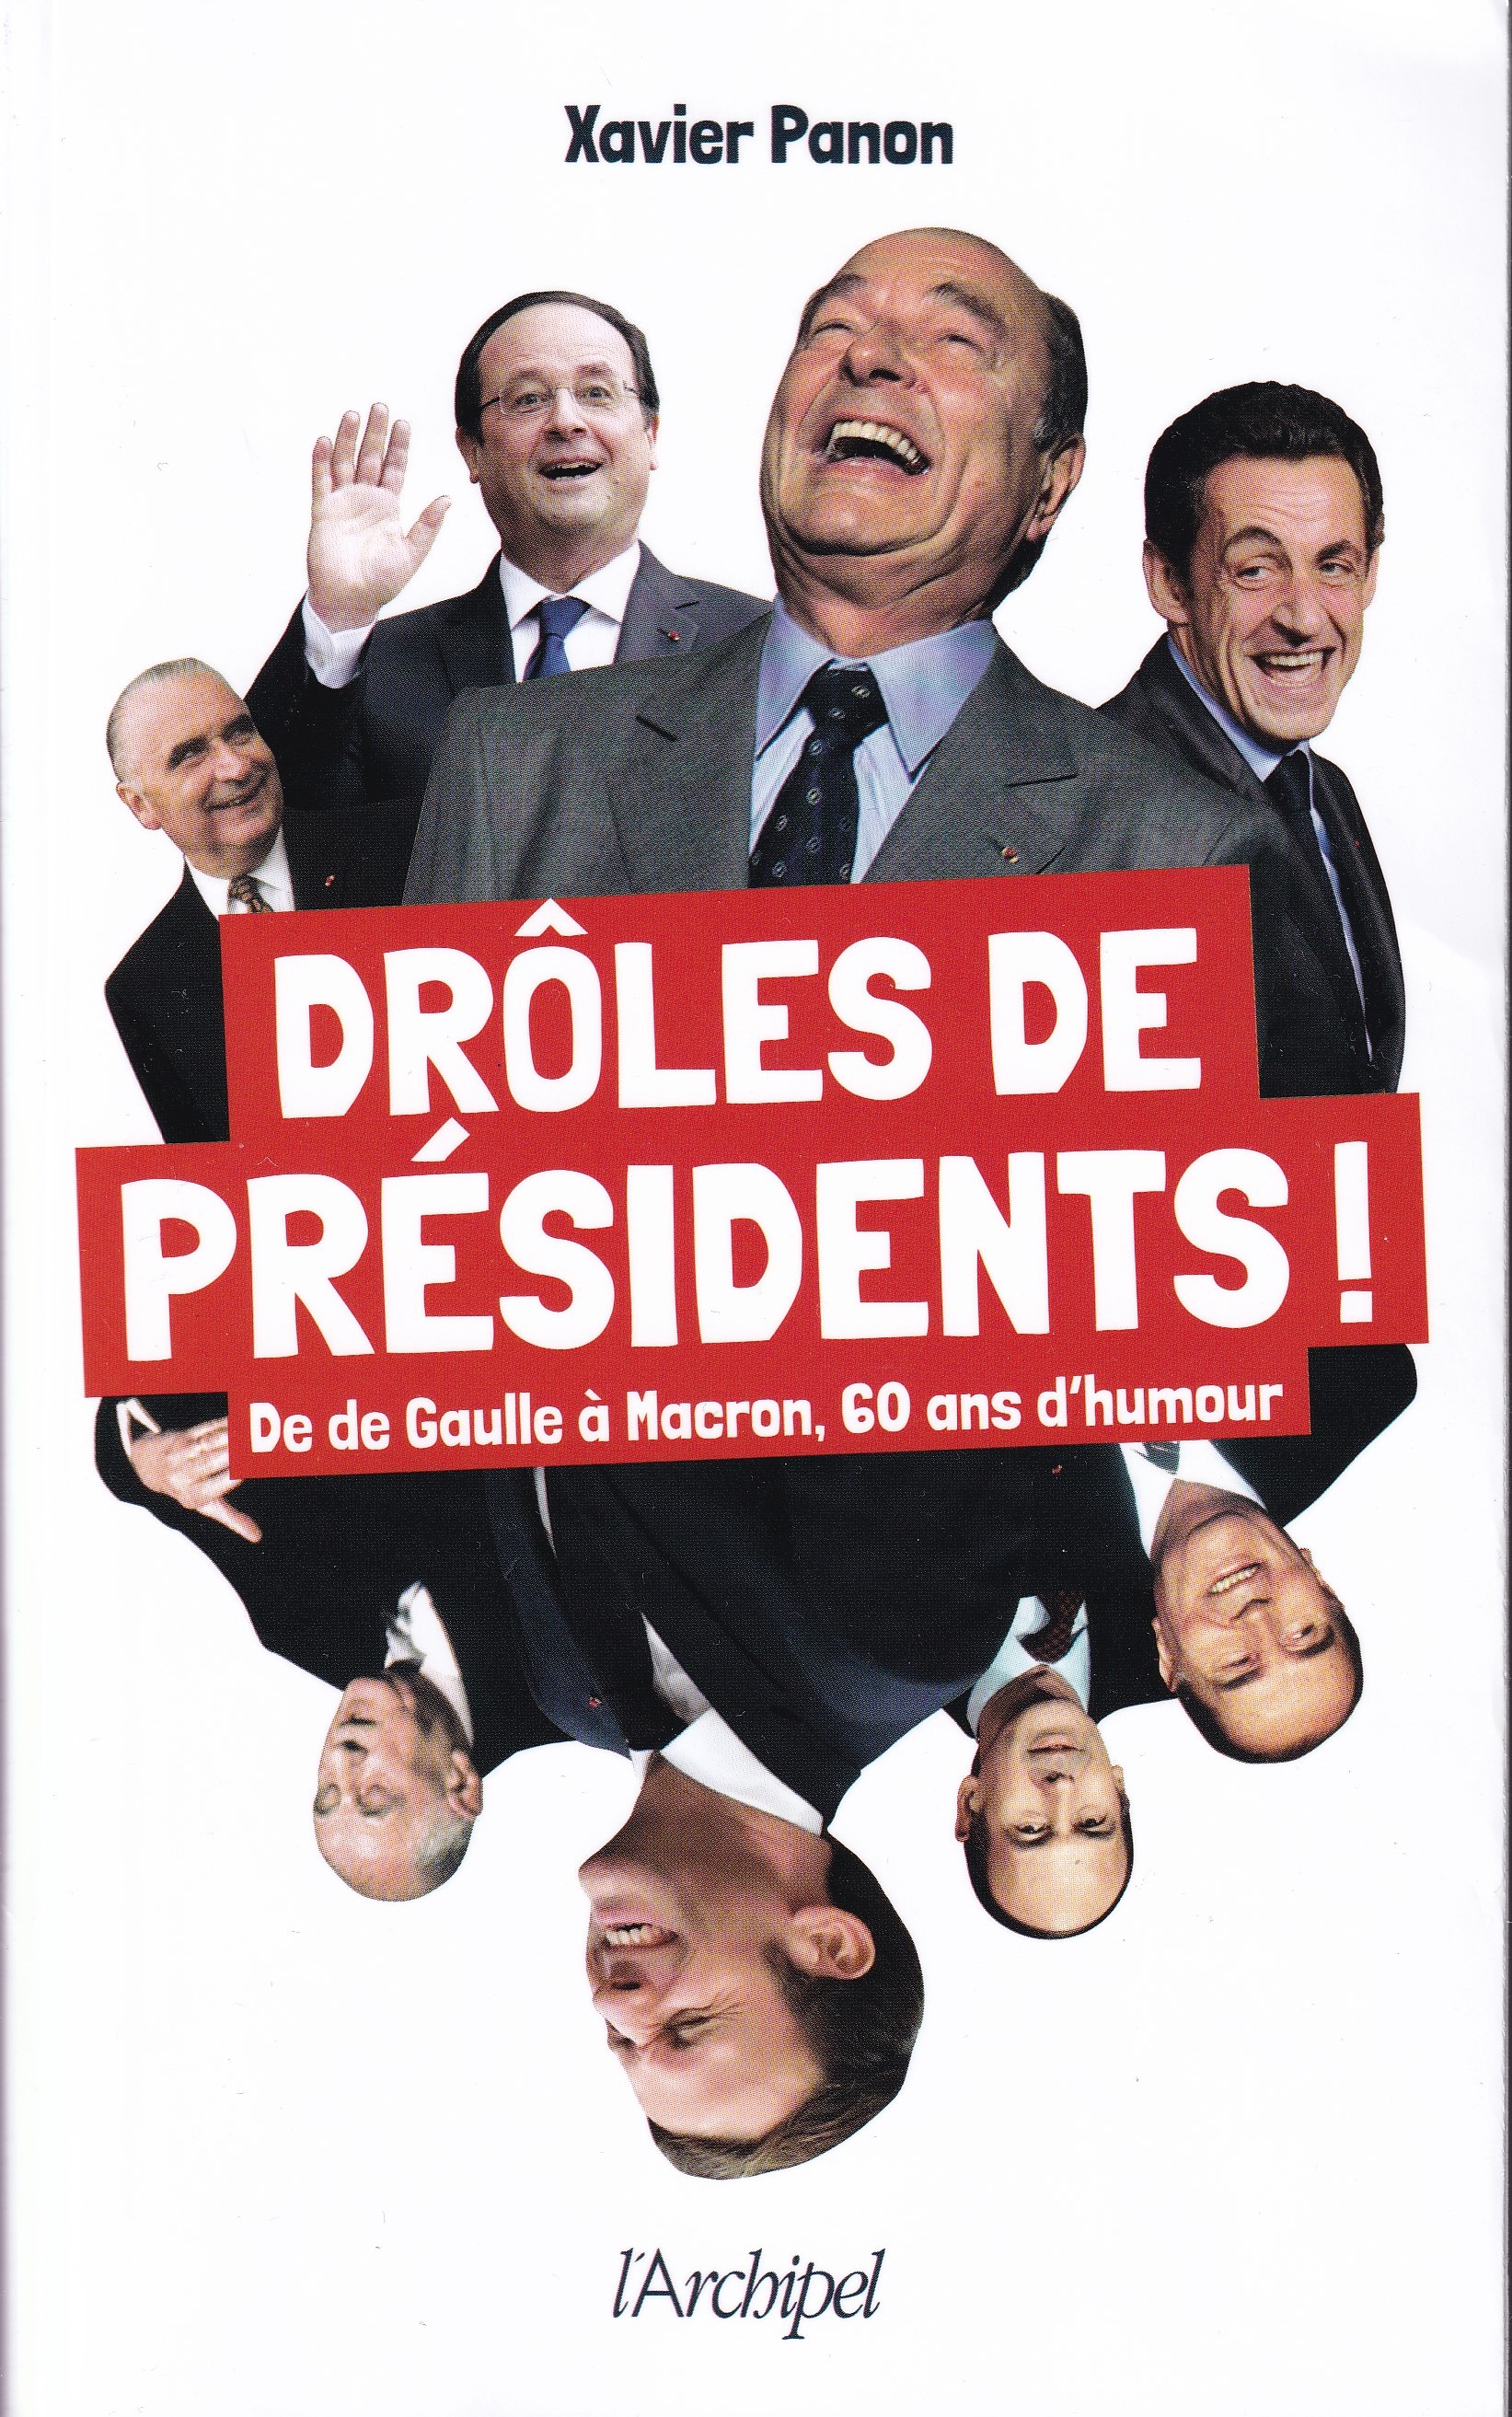 Drôles de présidents – De de Gaulle à Macron, 60 ans d’humour